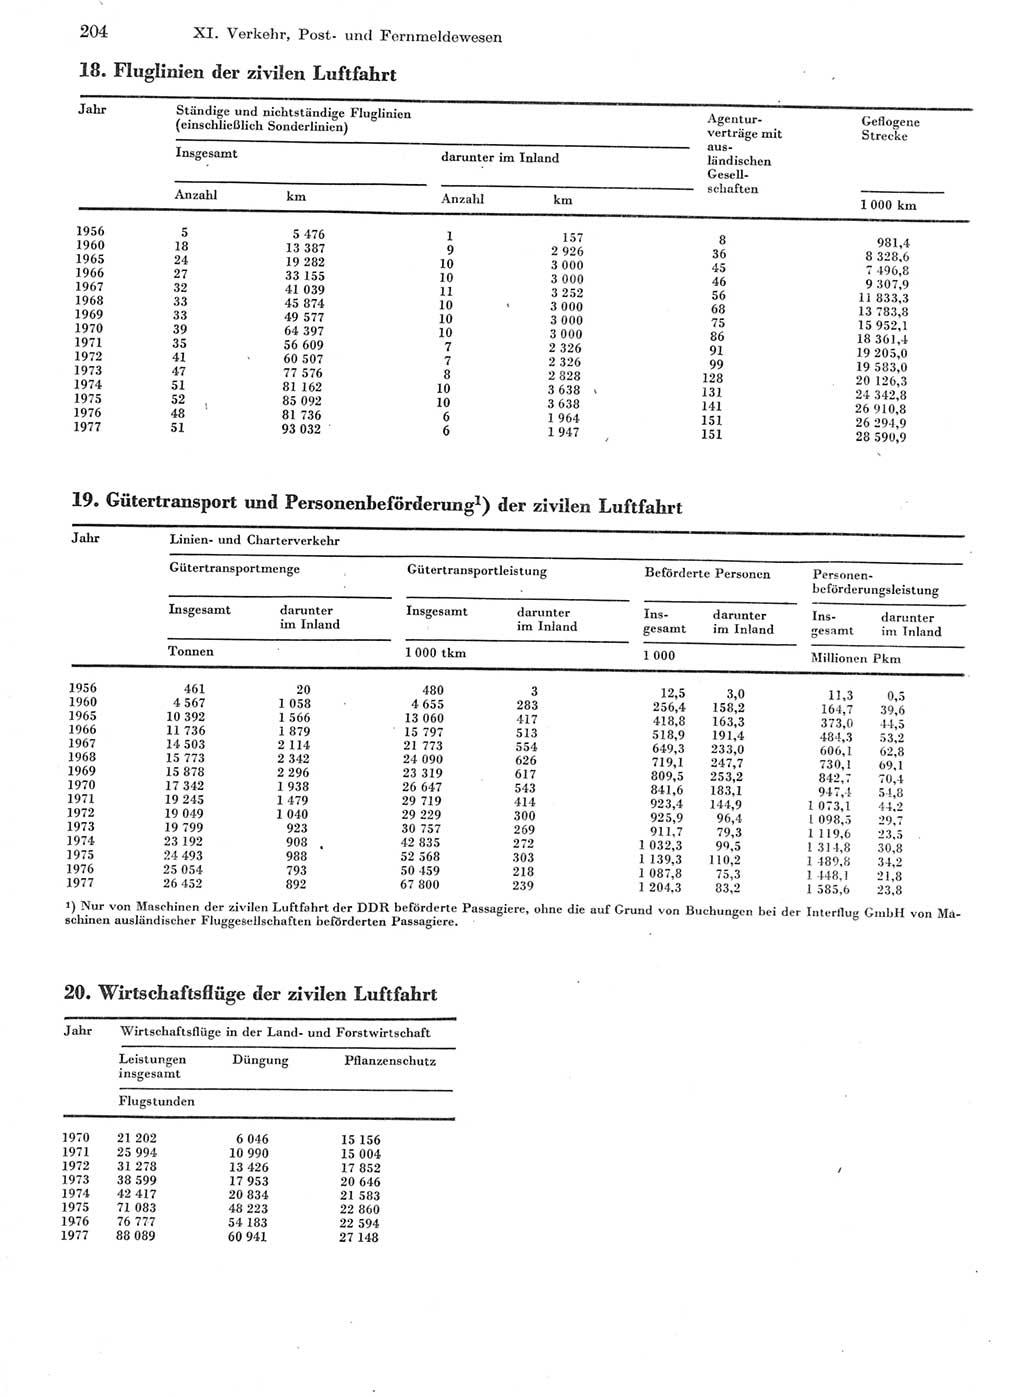 Statistisches Jahrbuch der Deutschen Demokratischen Republik (DDR) 1978, Seite 204 (Stat. Jb. DDR 1978, S. 204)